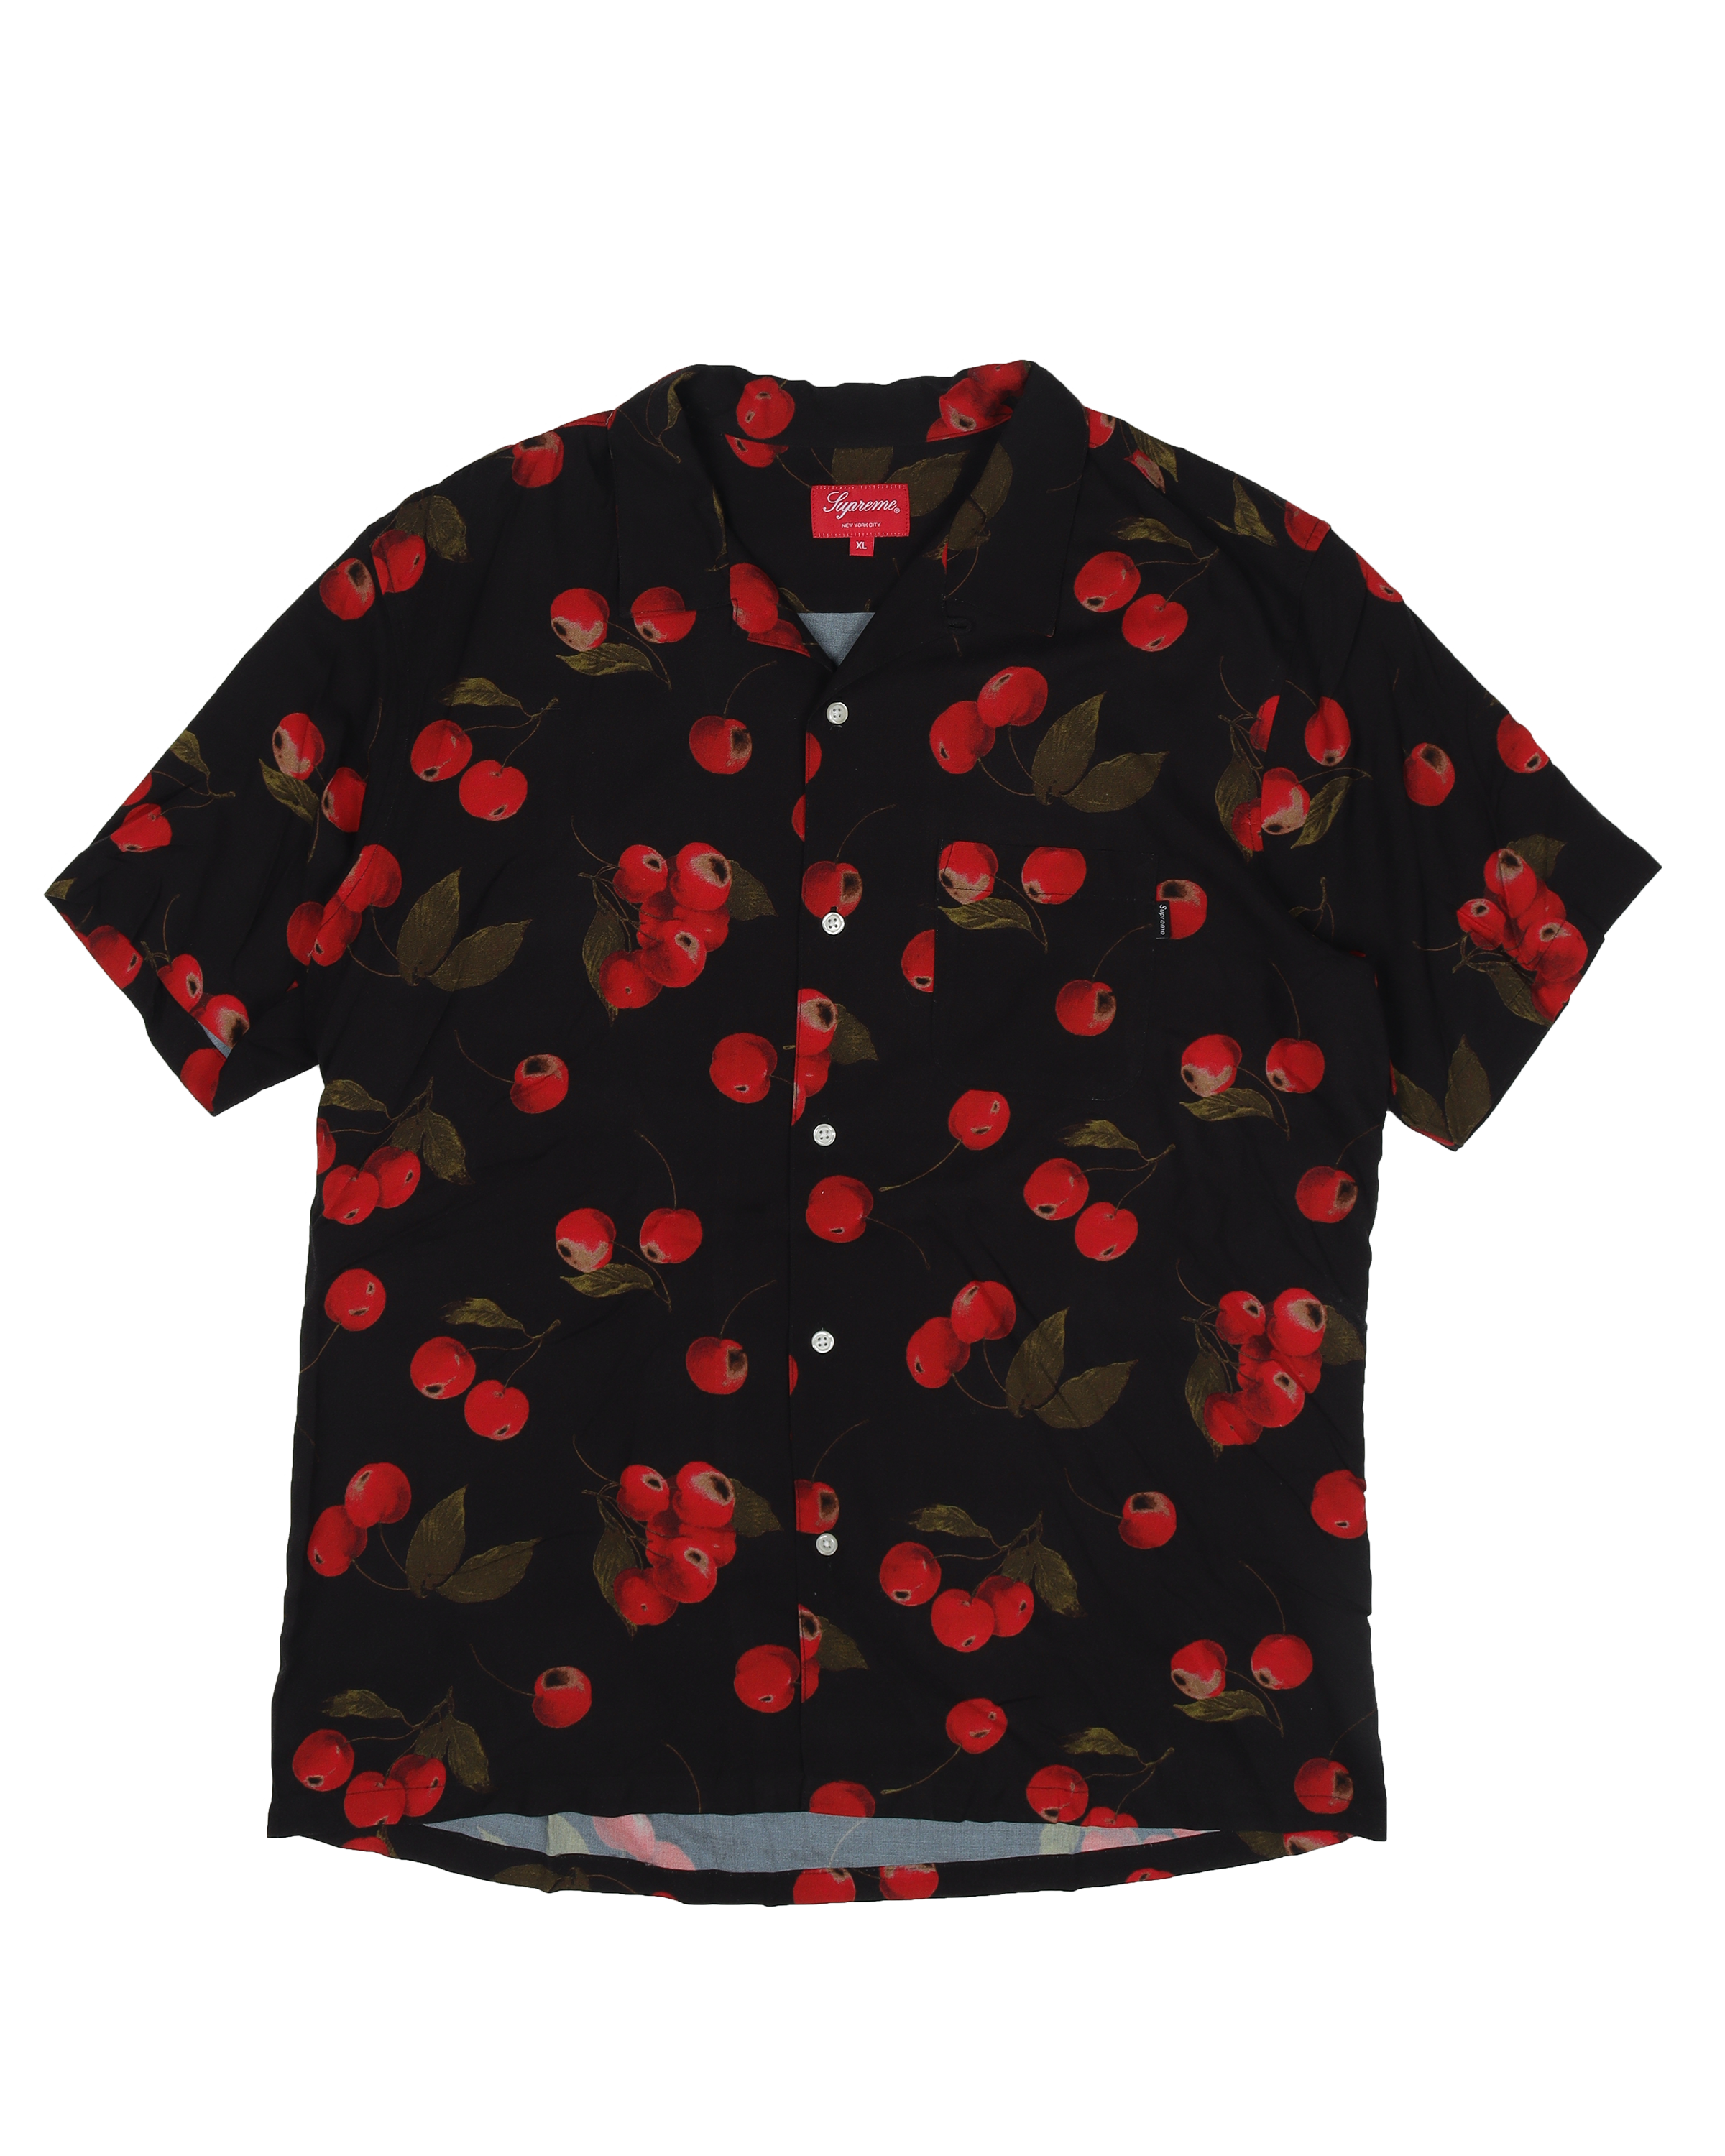 Supreme SS19 Cherry Rayon Shirt